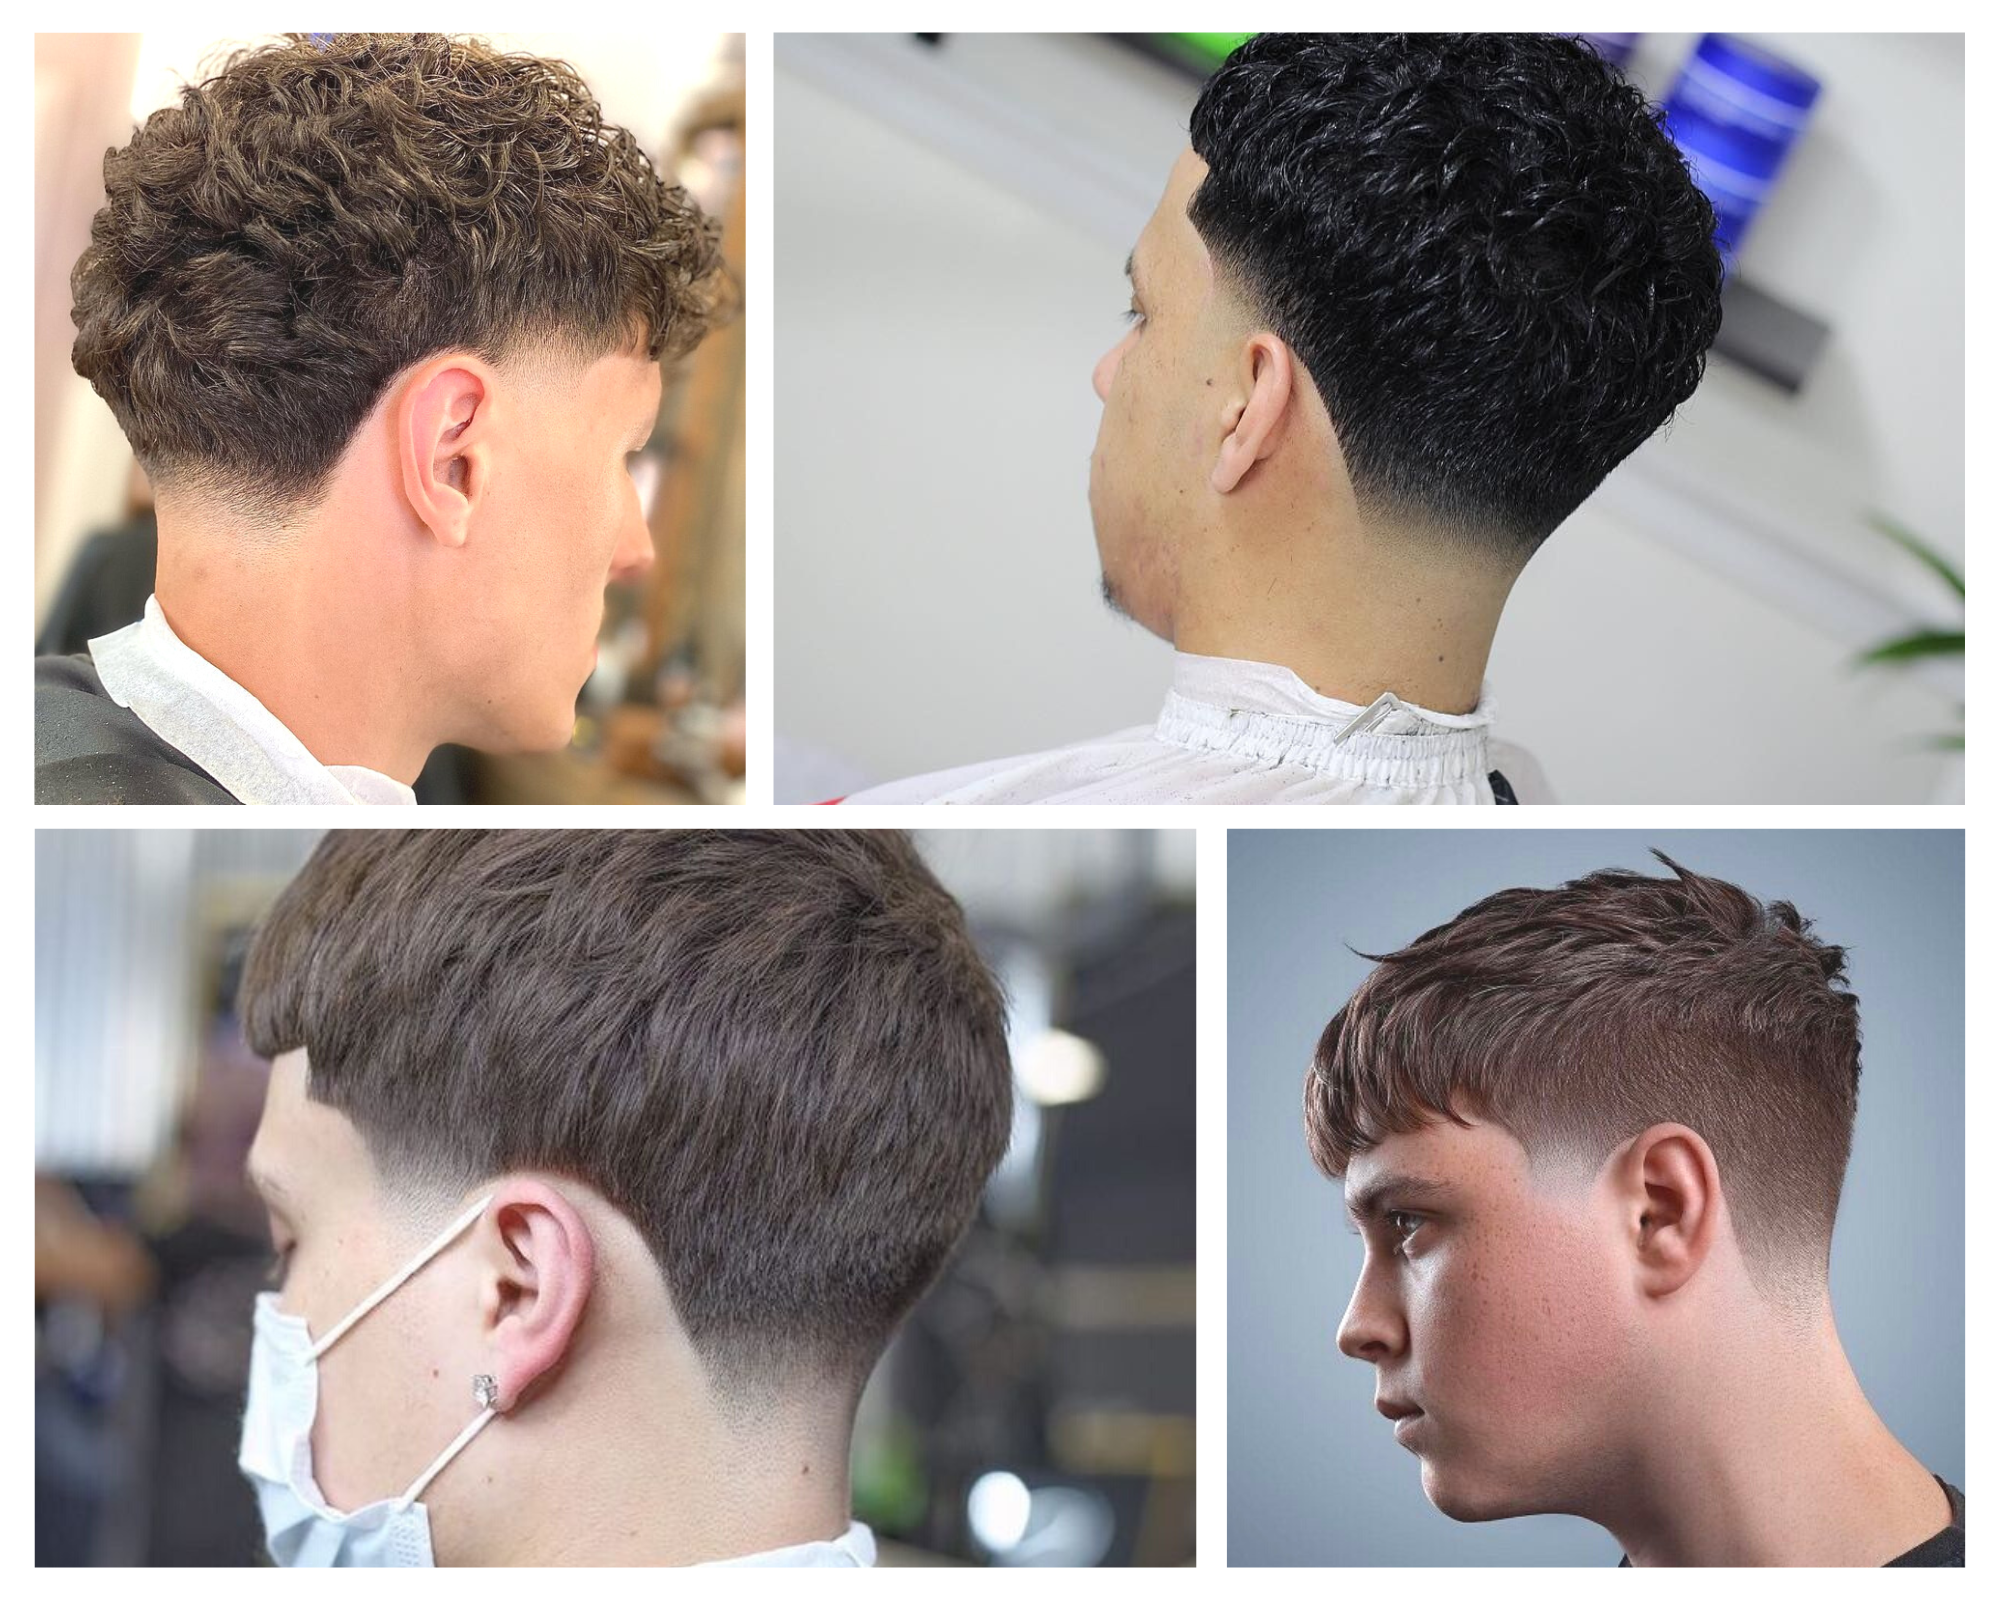 Corte de pelo taper fade : El estilo perfecto para los hombres que buscan un look moderno y sofisticado